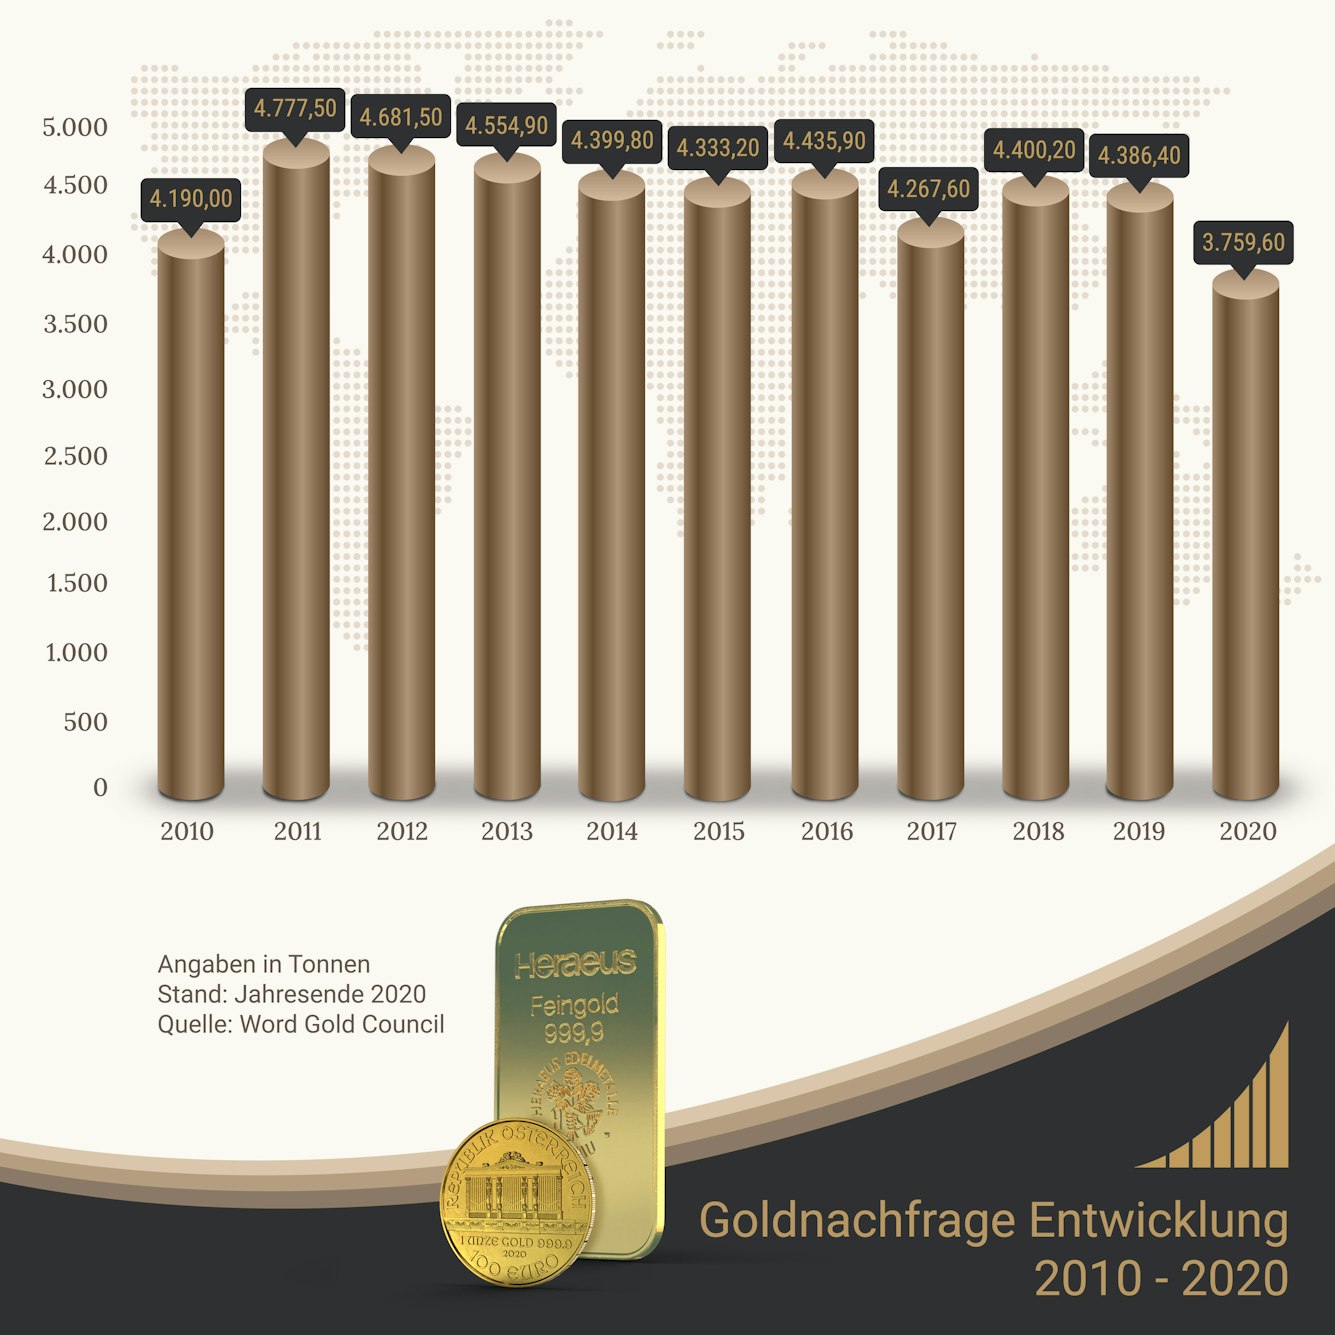 Die Entwicklung der Goldnachfrage von 2010 bis 2020.